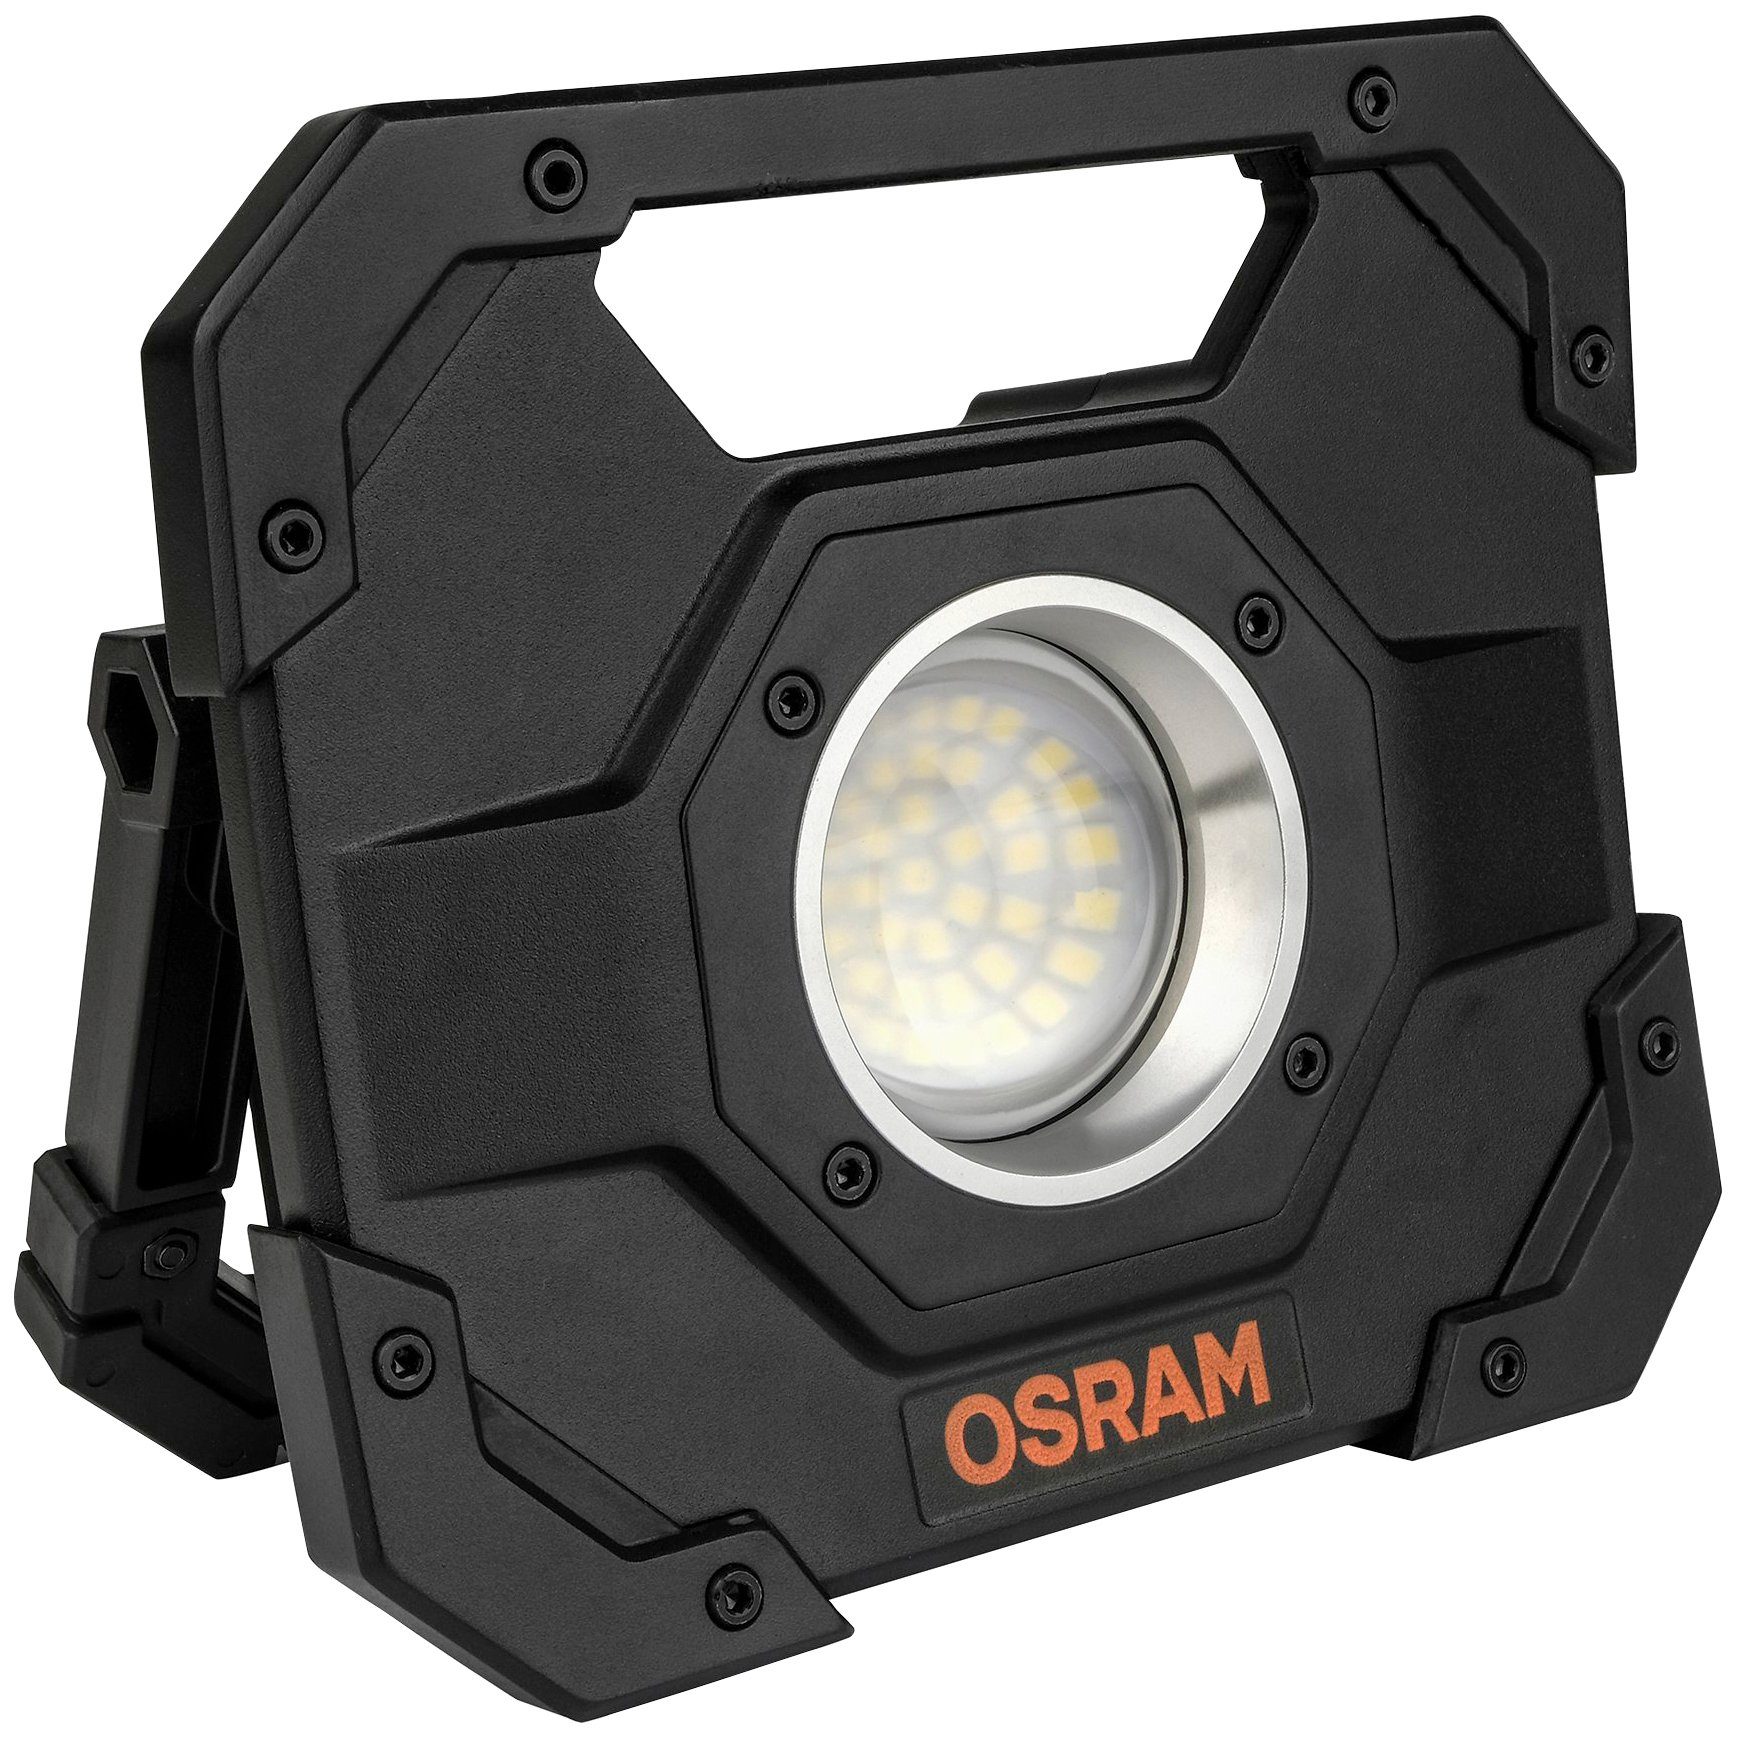 Osram LED Arbeitsleuchte, 1000 Lumen, auch als Powerbank nutzbar, 10 W, mit  Akku